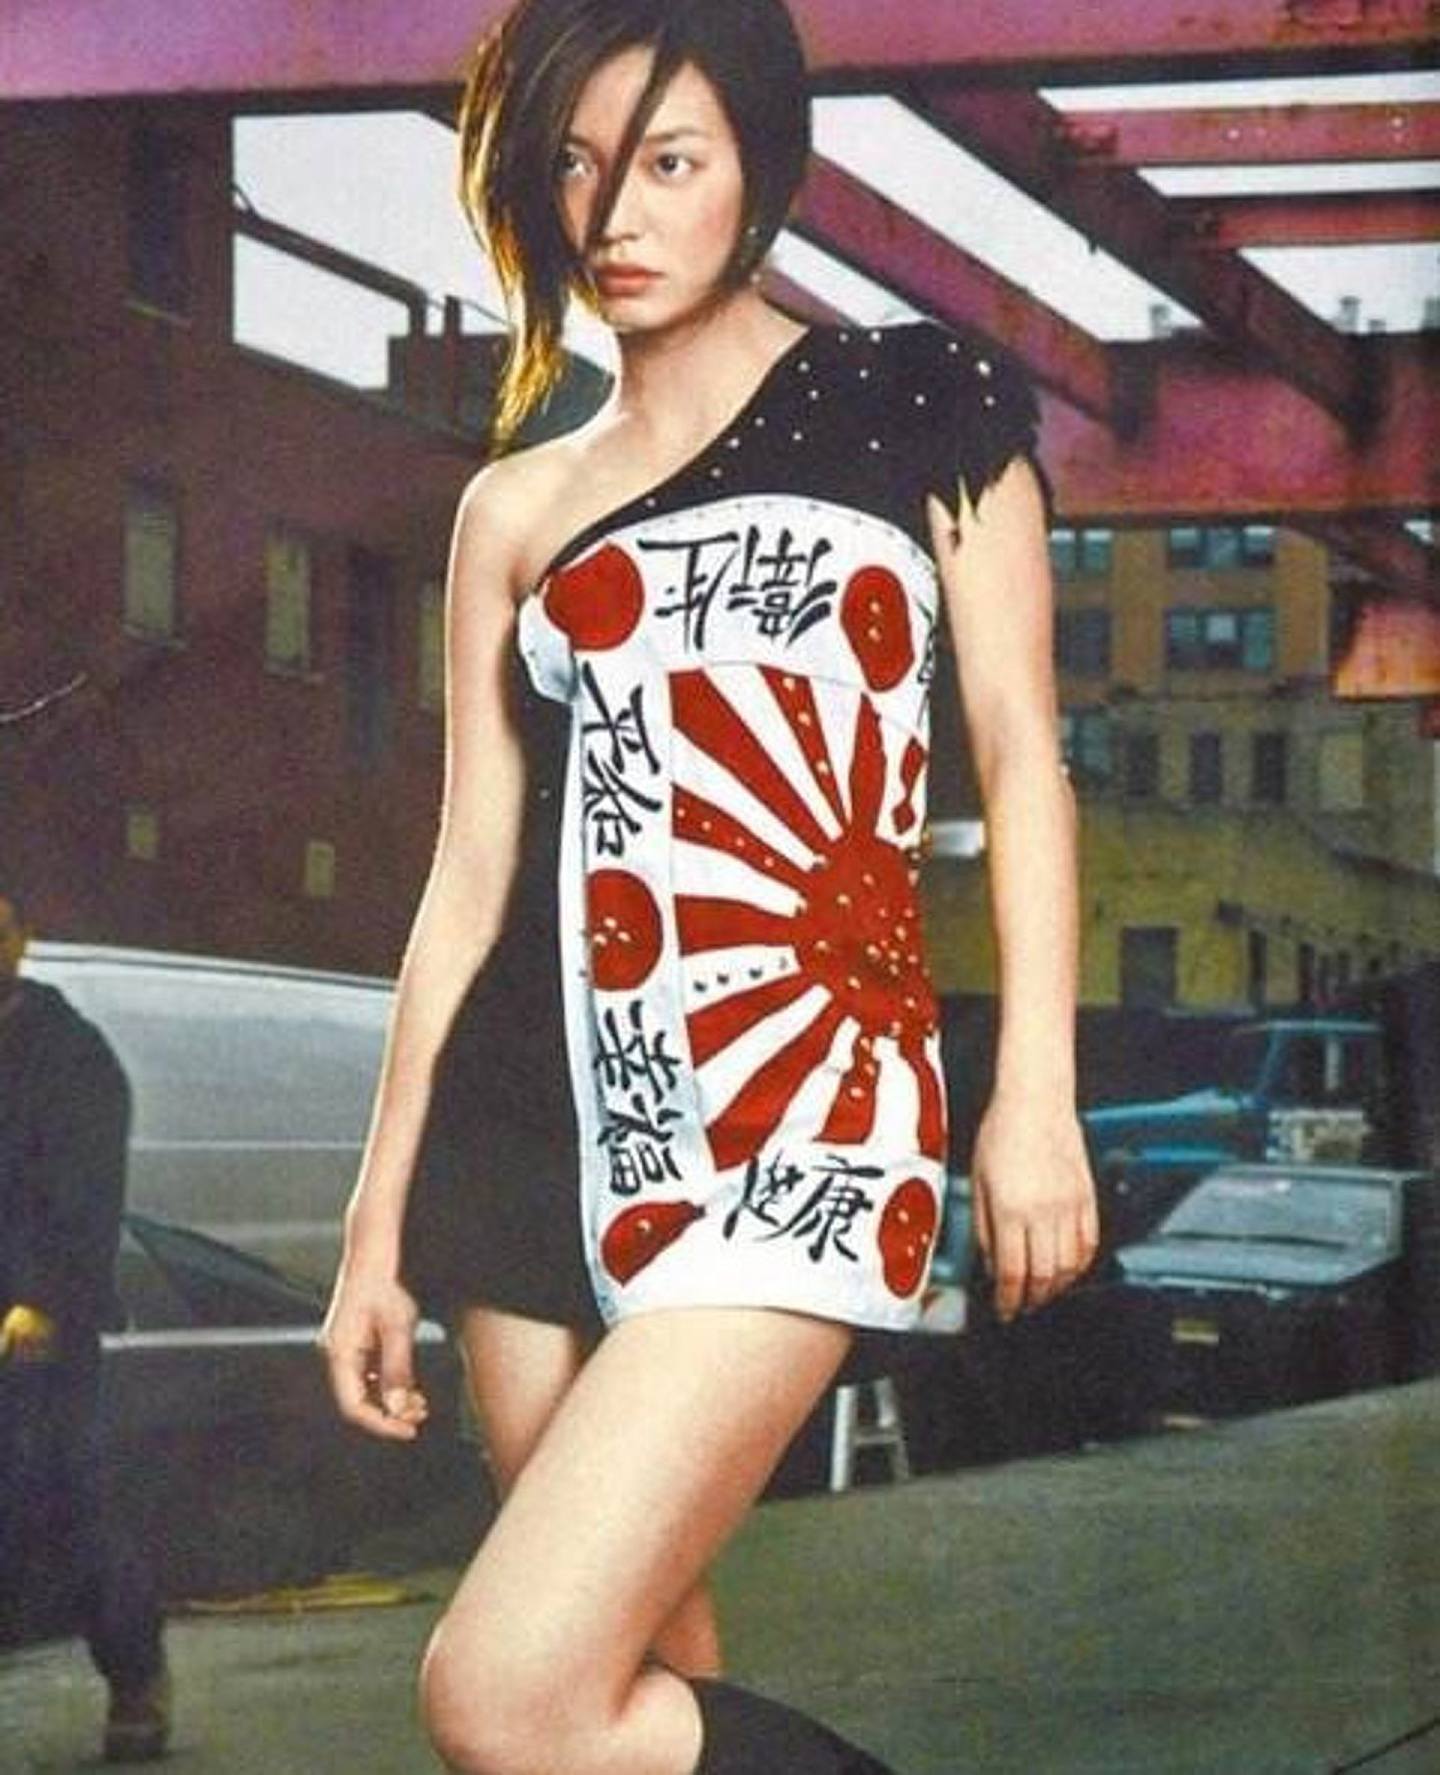 赵薇当年因为穿上日本军旗衫为内地《时装》杂志拍摄硬照而遭到狂徙袭击。 (《时装》图片)